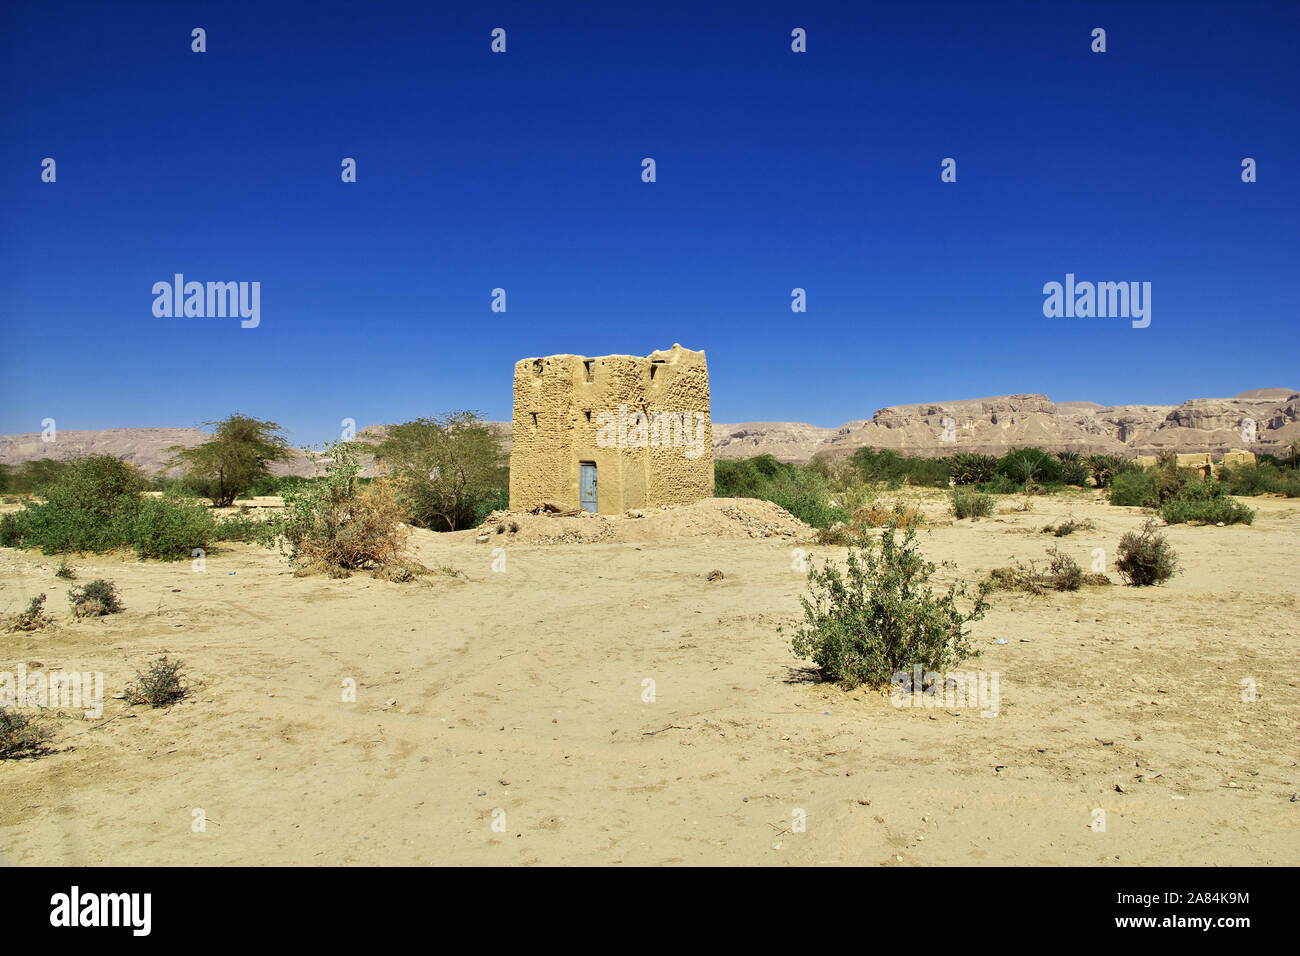 Kasbah, the vinatge house in mountains in Wadi Hadhramaut, Yemen Stock Photo